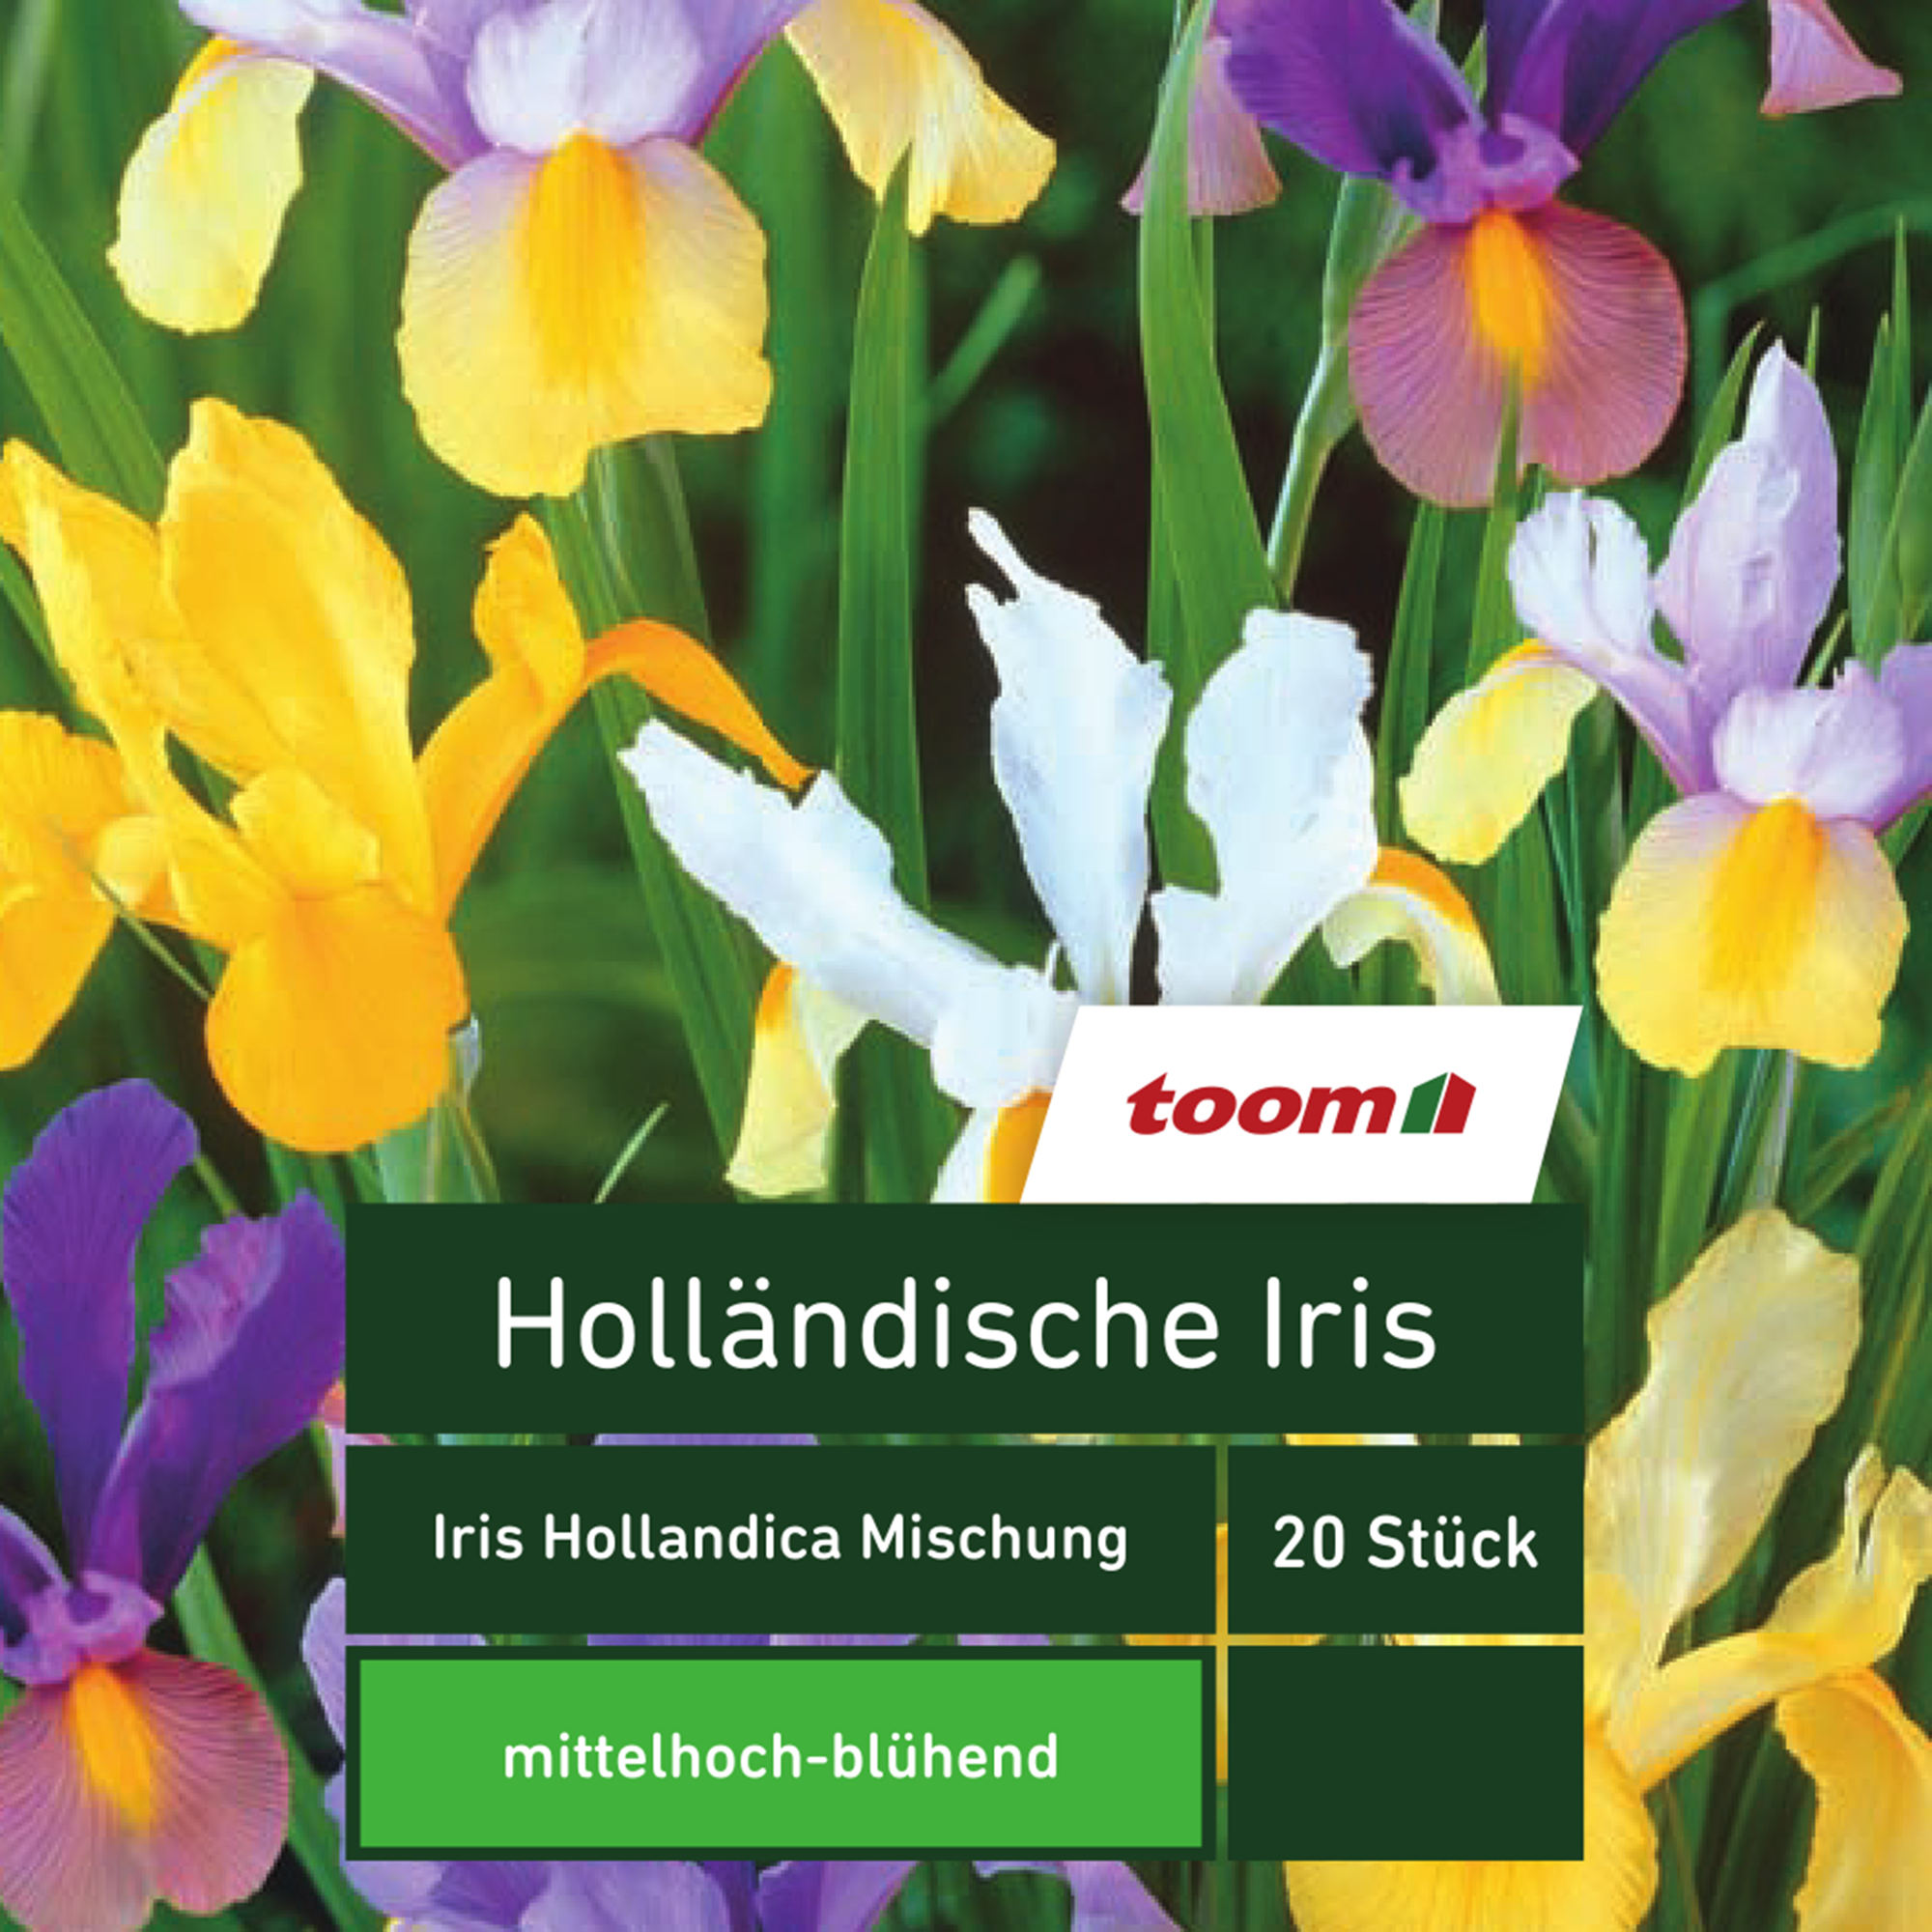 Holländische Iris 'Iris Hollandica', 20 Stück, mehrfarbig + product picture